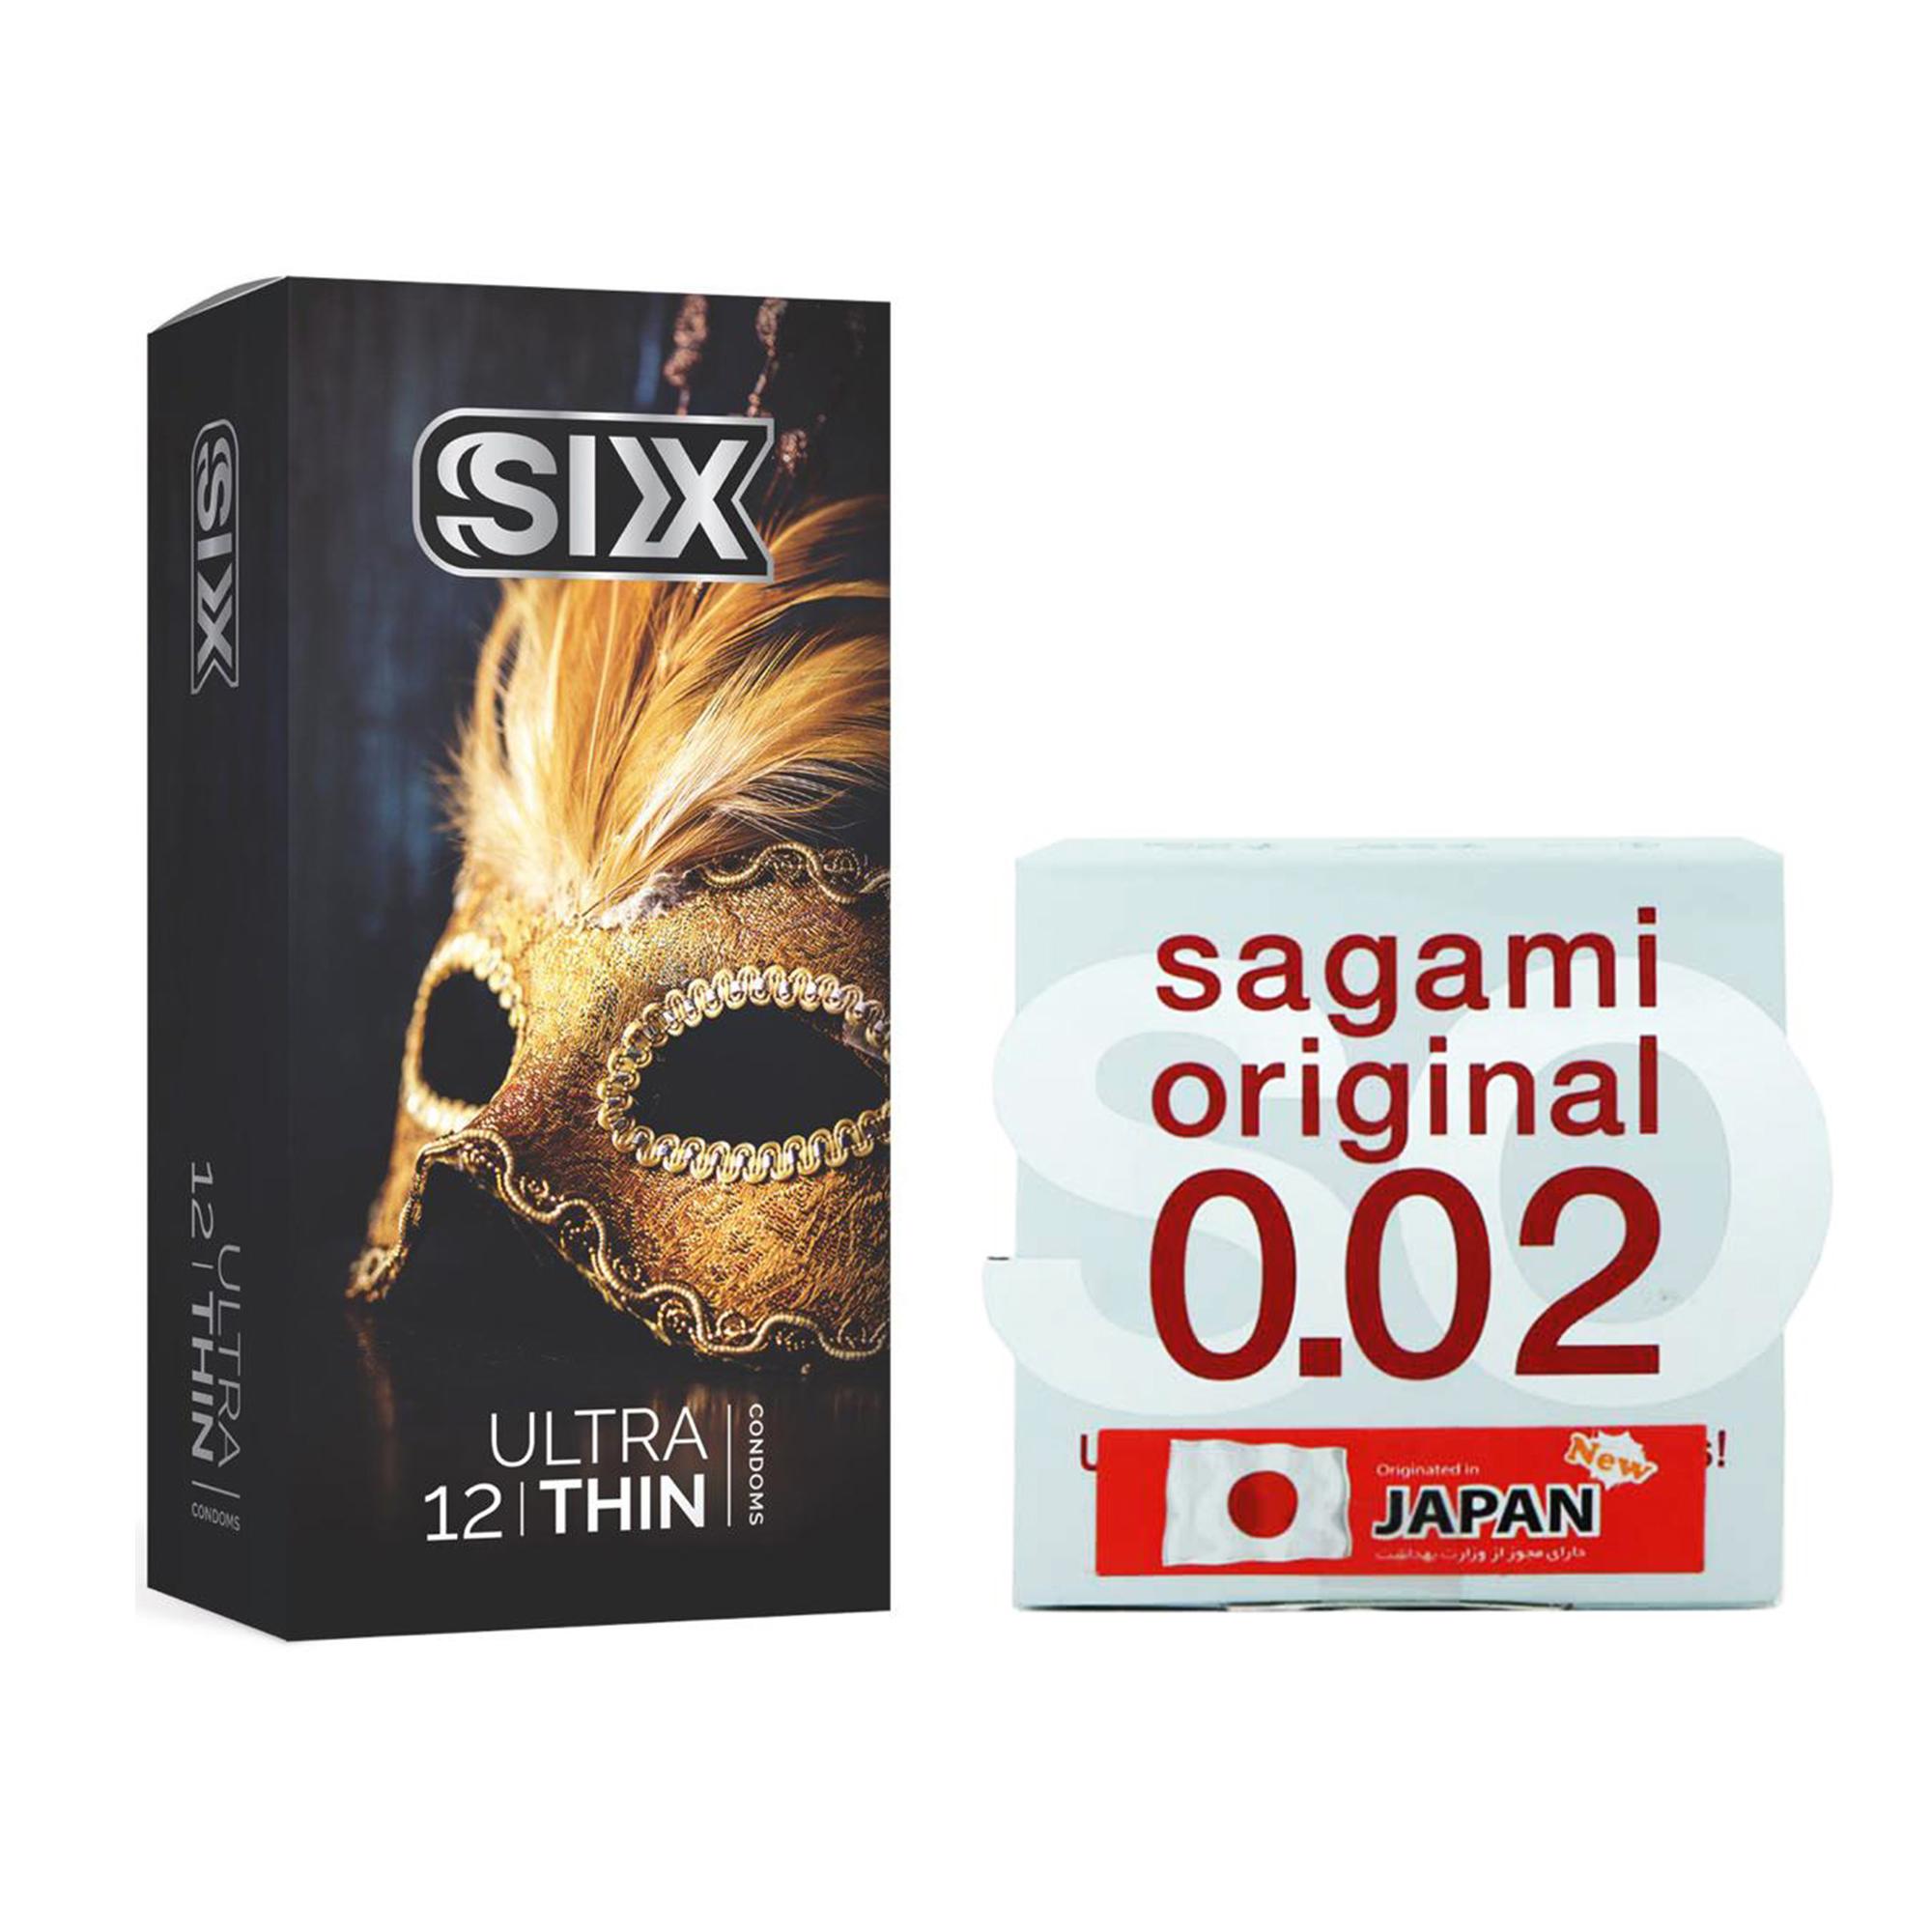 کاندوم ساگامی مدل Normal به همراه کاندوم سیکس مدل Ultra Thin بسته 12 عددی